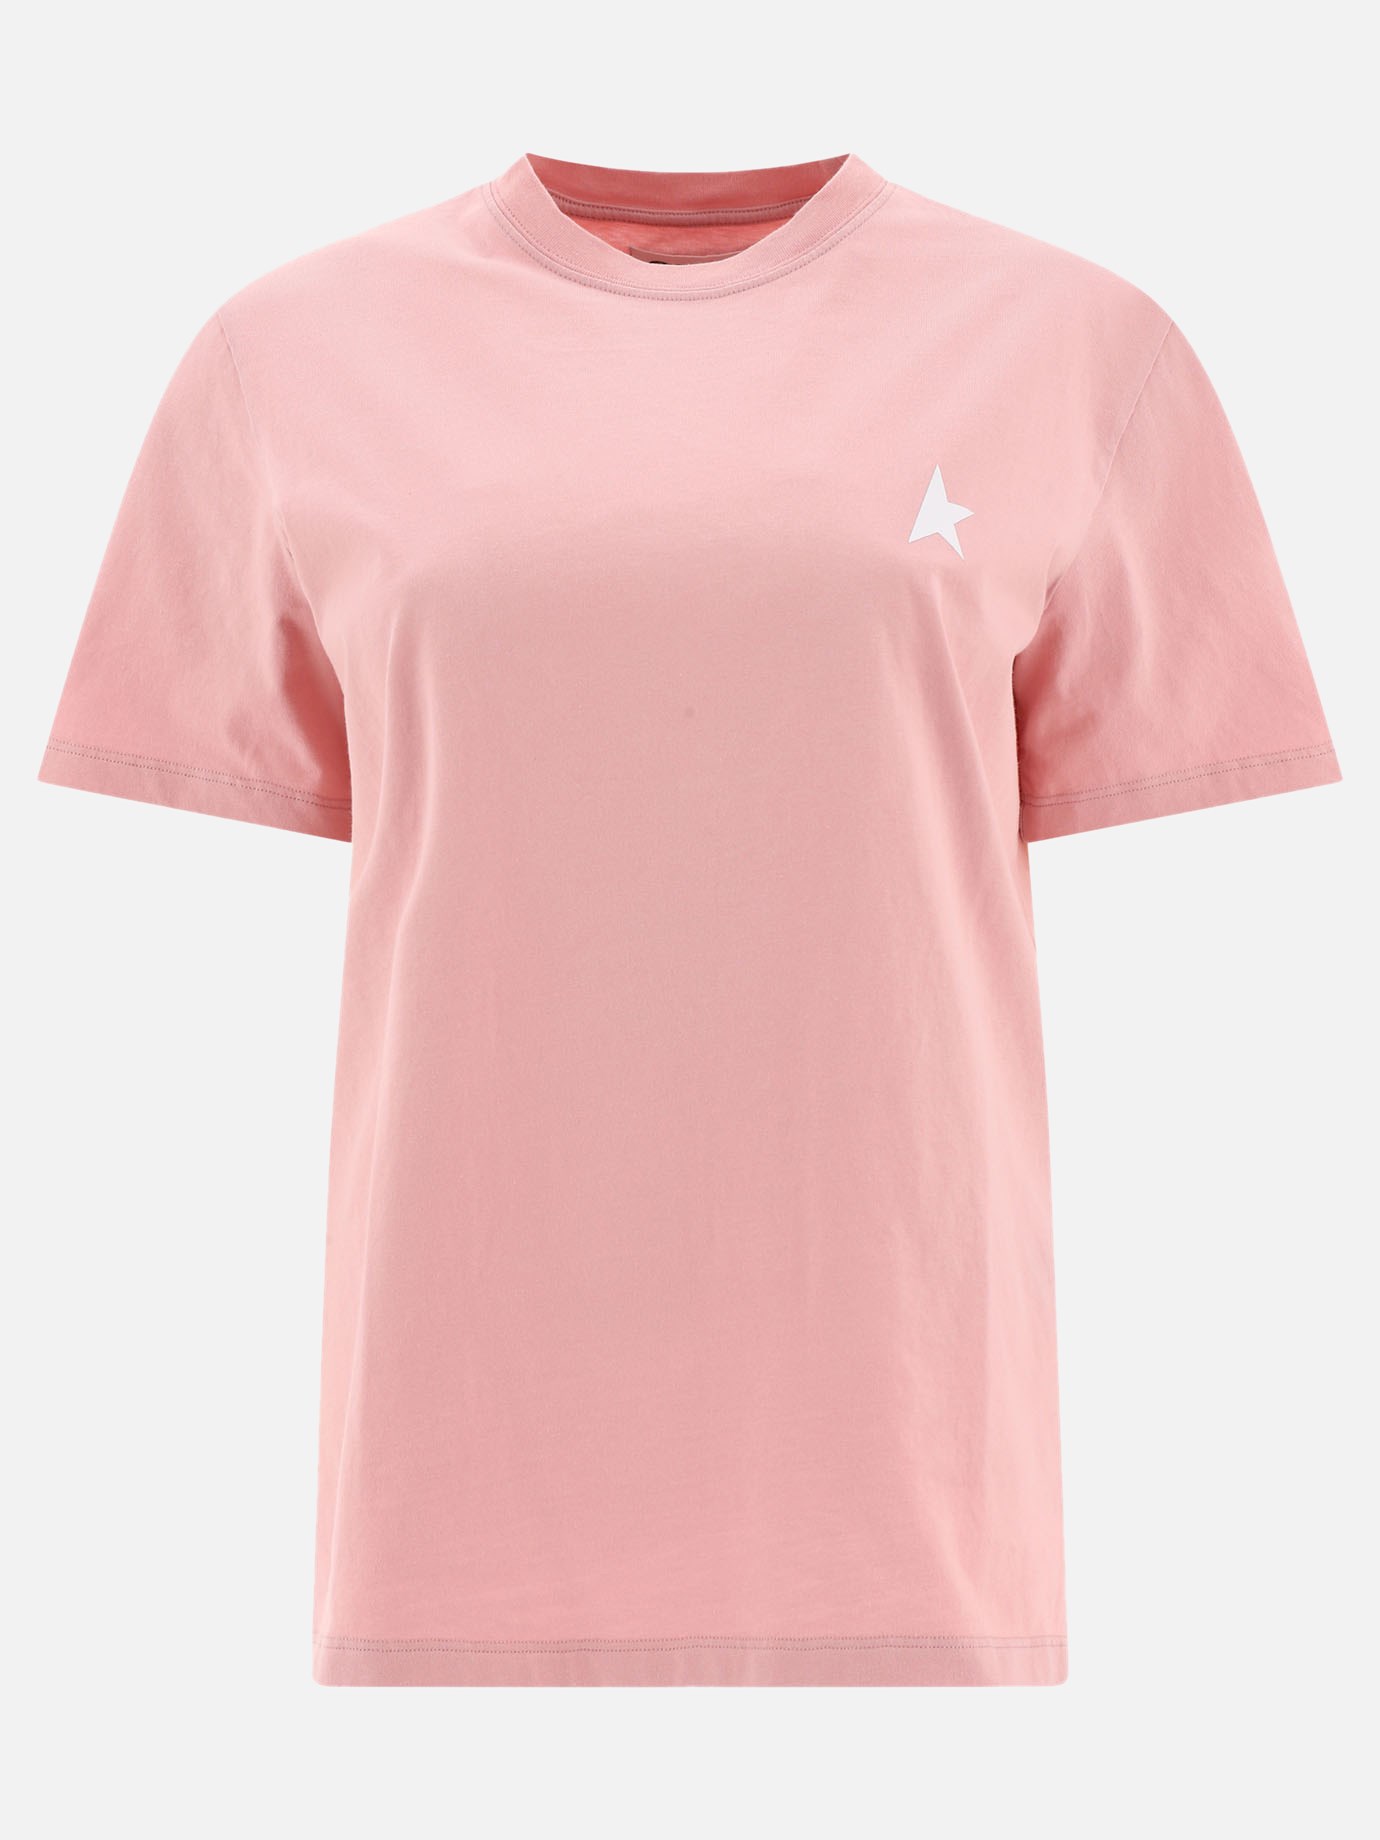 T-shirt  Star by Golden Goose - 0